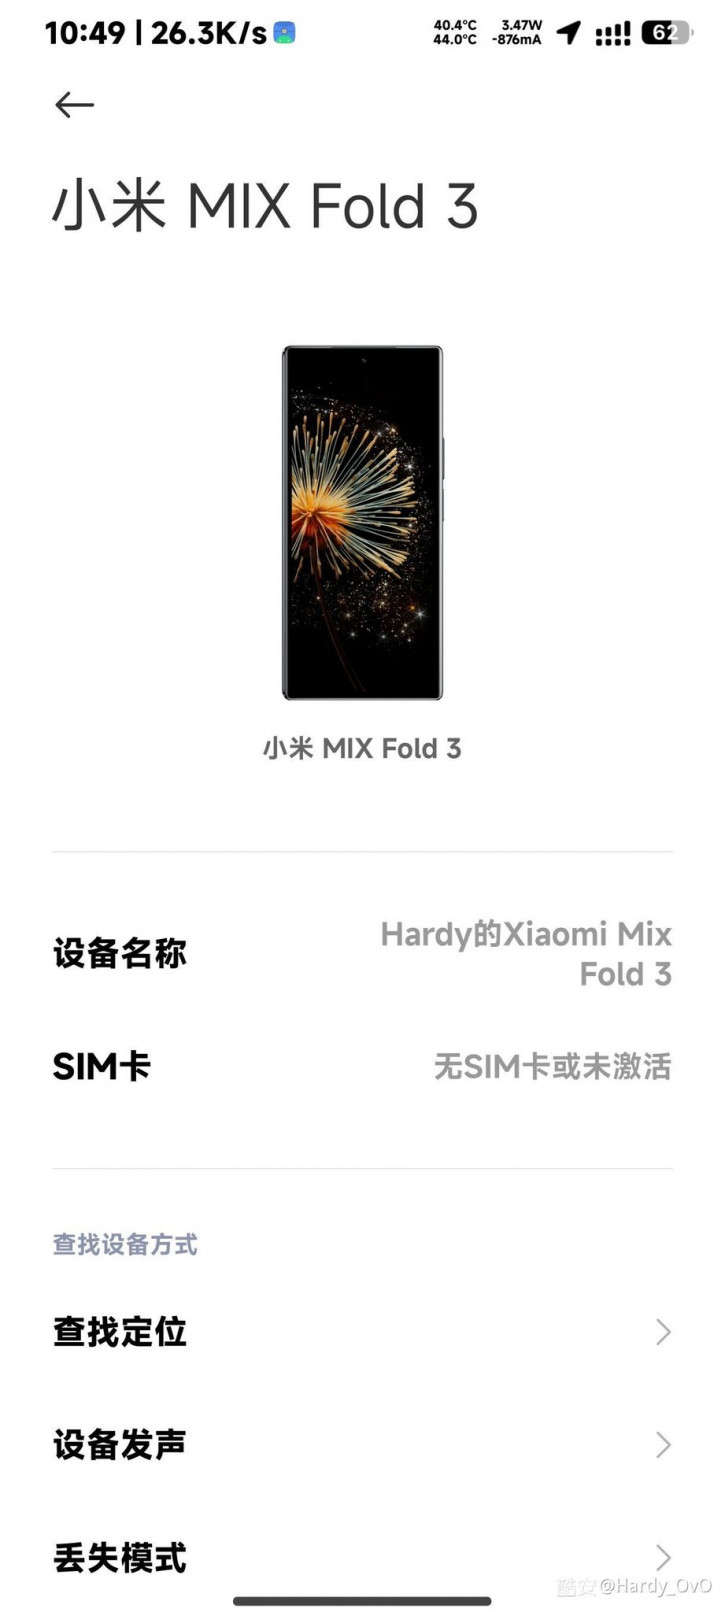 К релизу готов! Коробку со складным Xiaomi Mix Fold 3 на фото